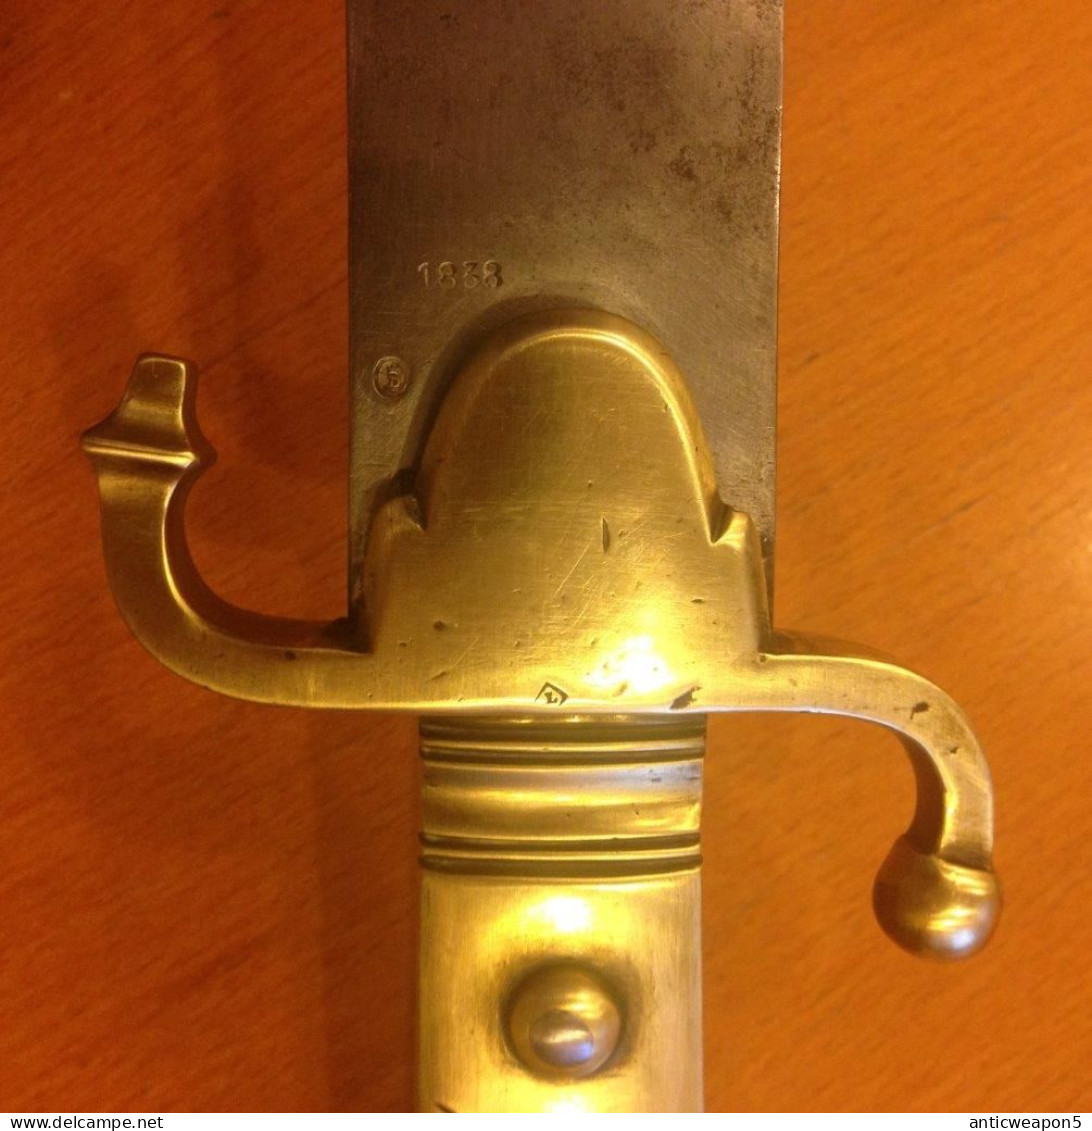 Un sabre de sapeur très rare avec une garde et une garde en laiton. Hollande. M1868 (T213)